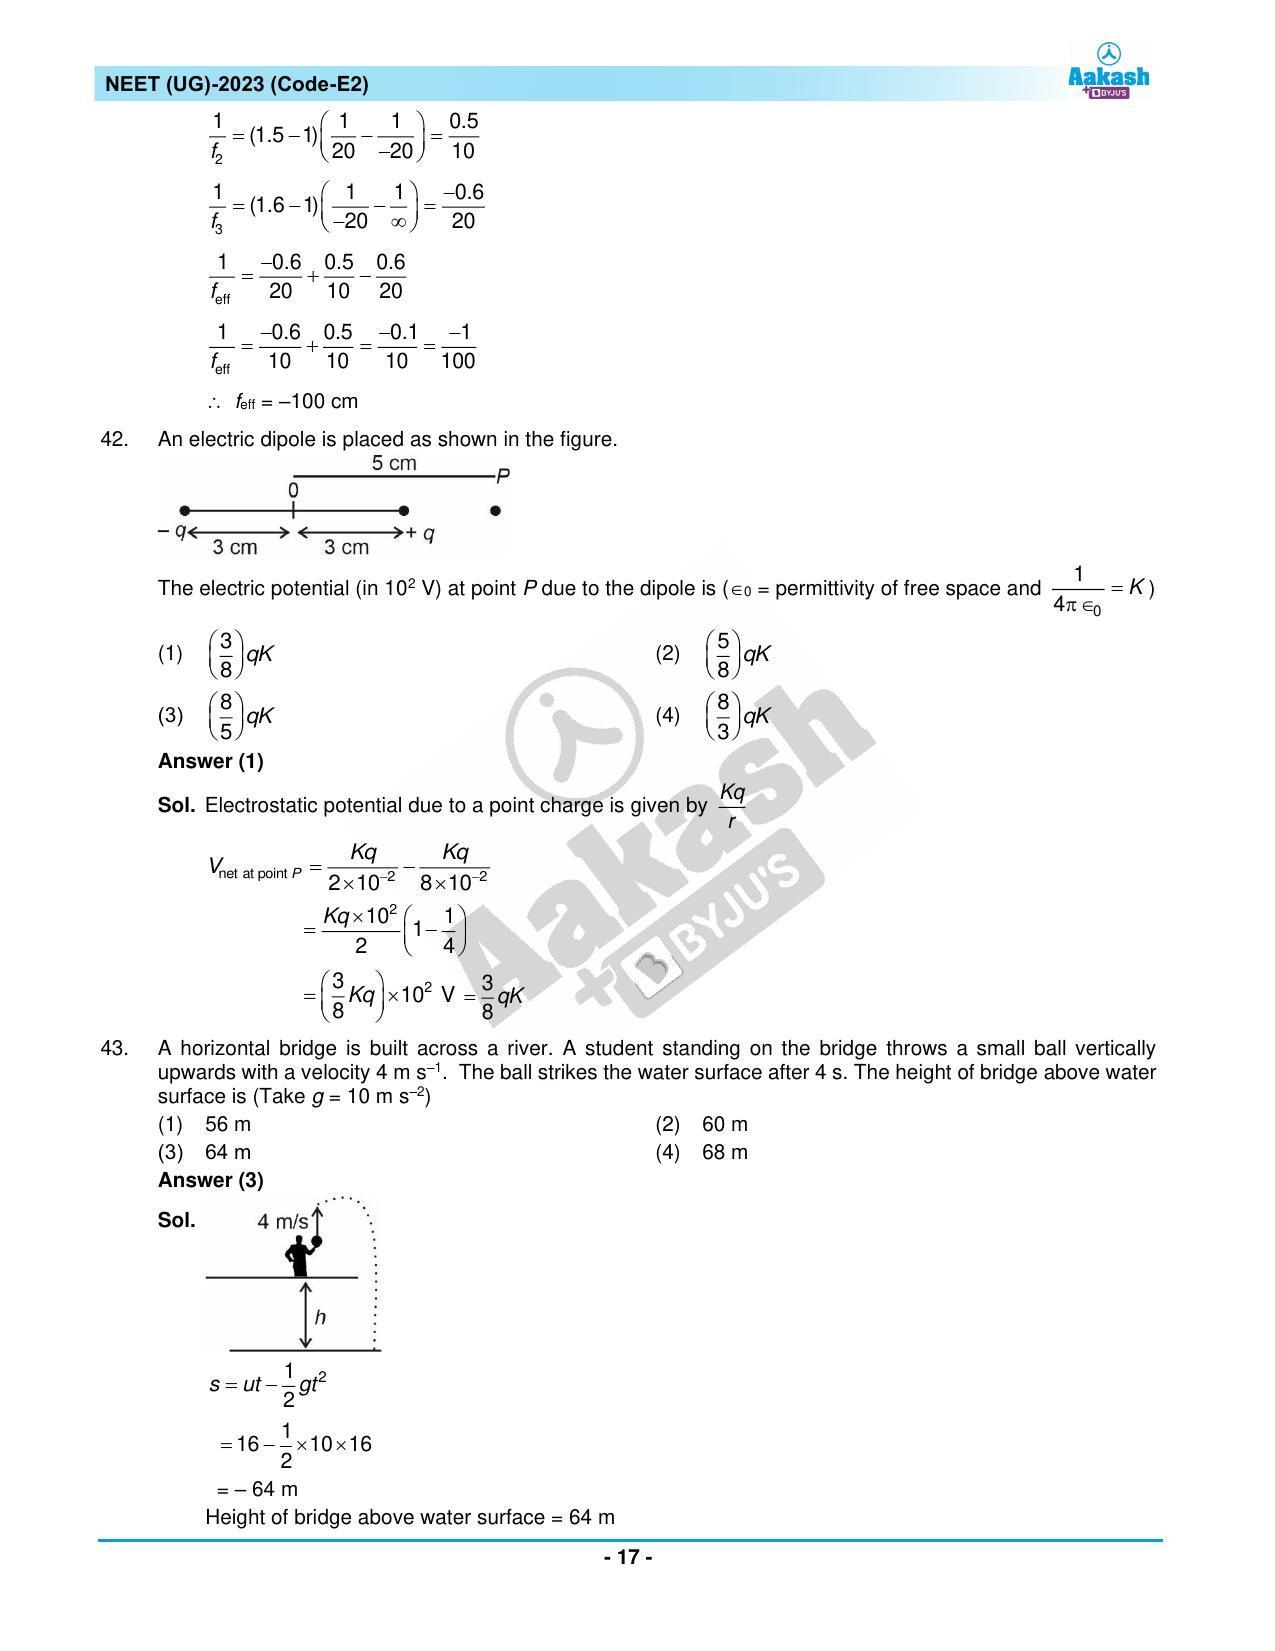 NEET 2023 Question Paper E2 - Page 17